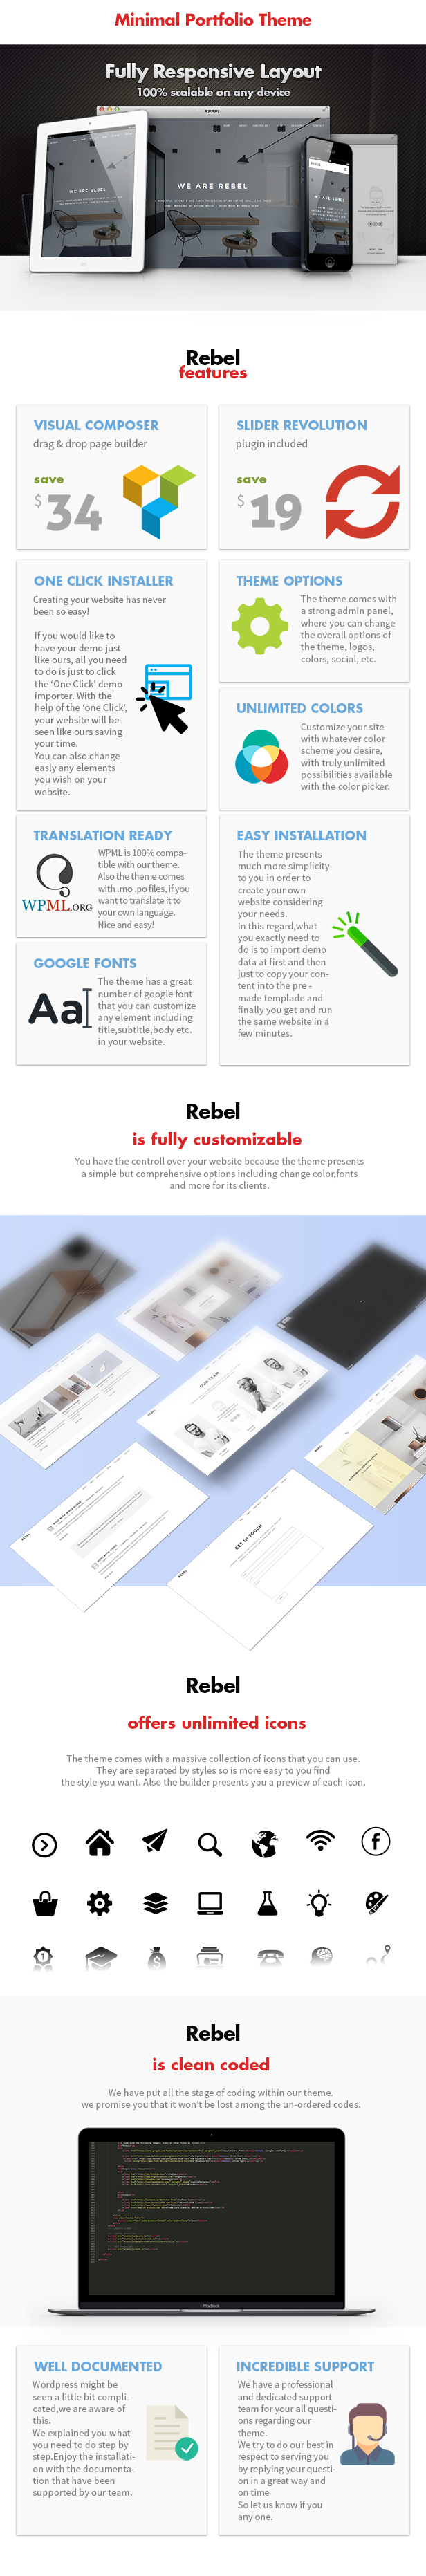 Rebel - Minimal Portfolio WordPress Layout - 6